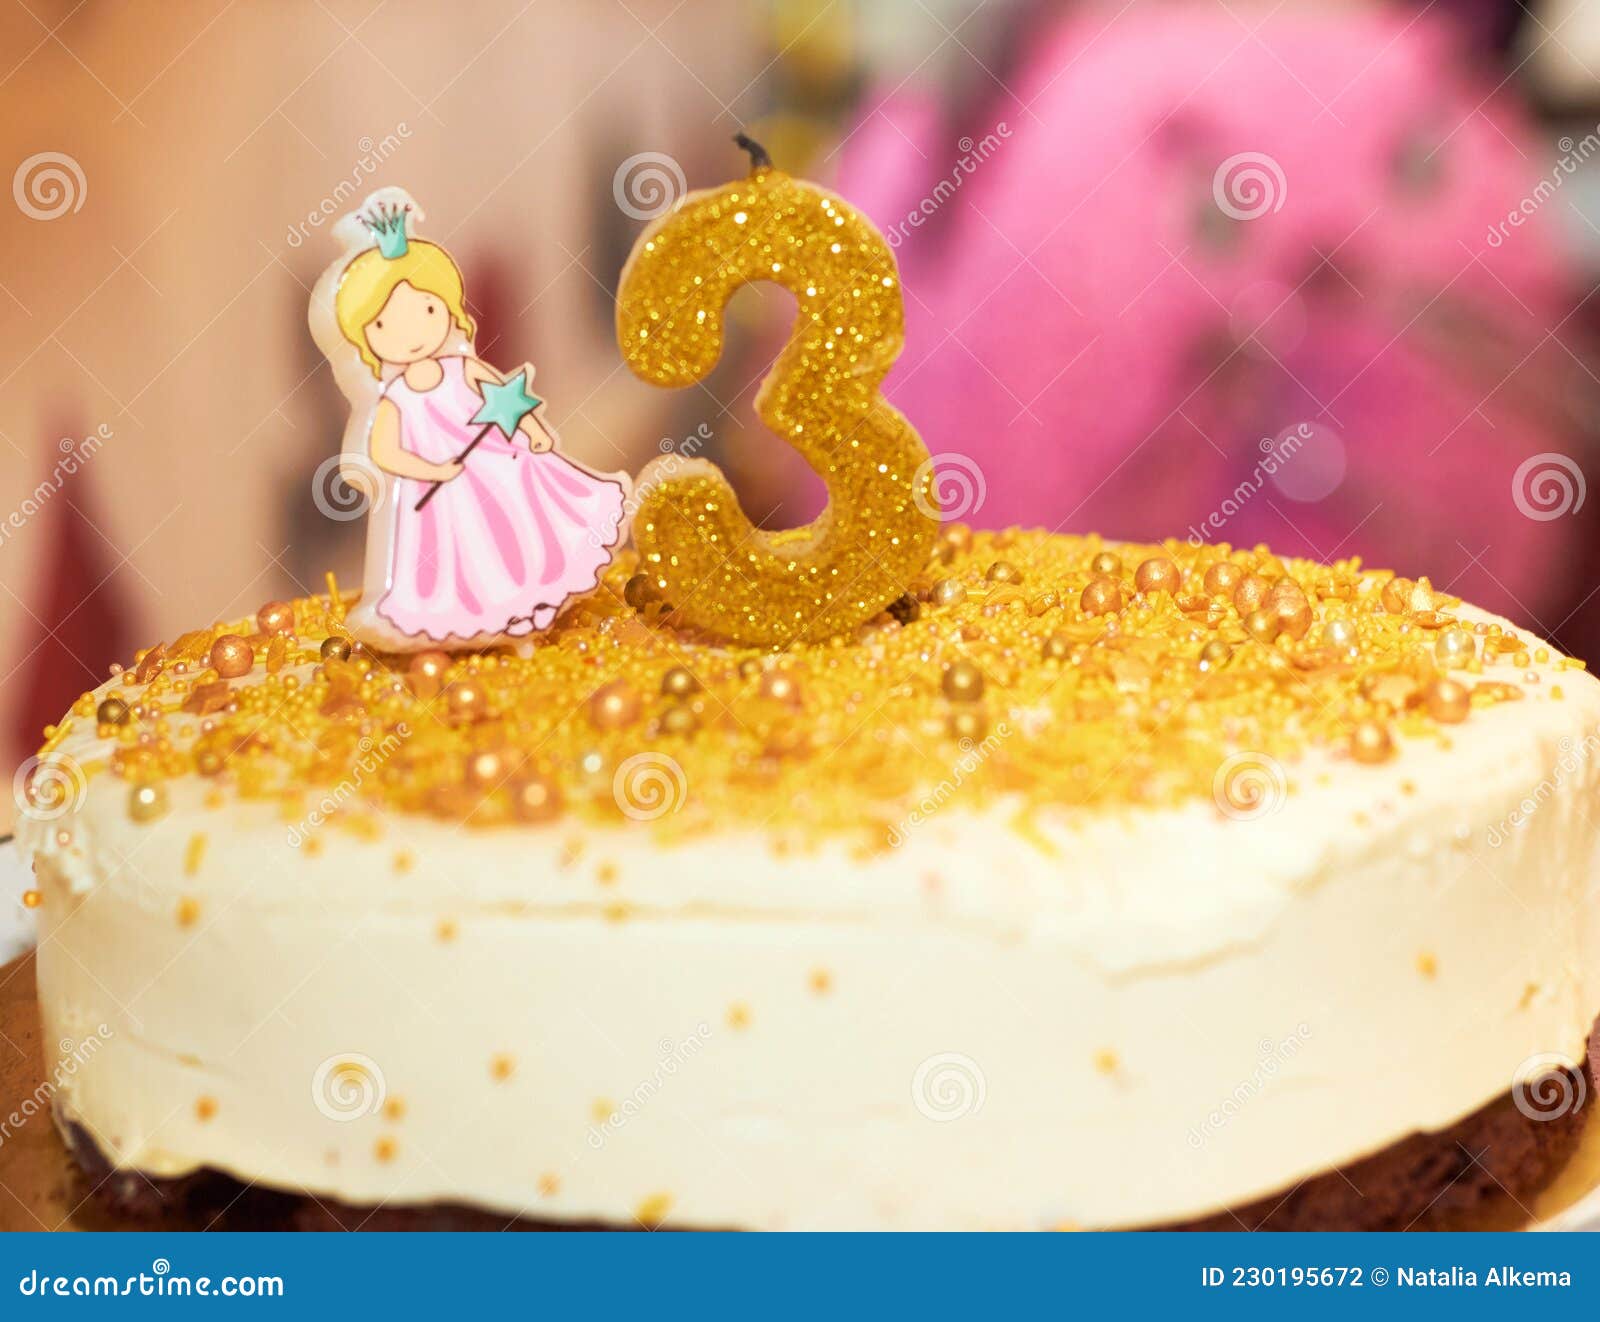 Disney Princesses Cake 3rd Birthday | Disney princess birthday cakes,  Disney princess cake, Princess cake